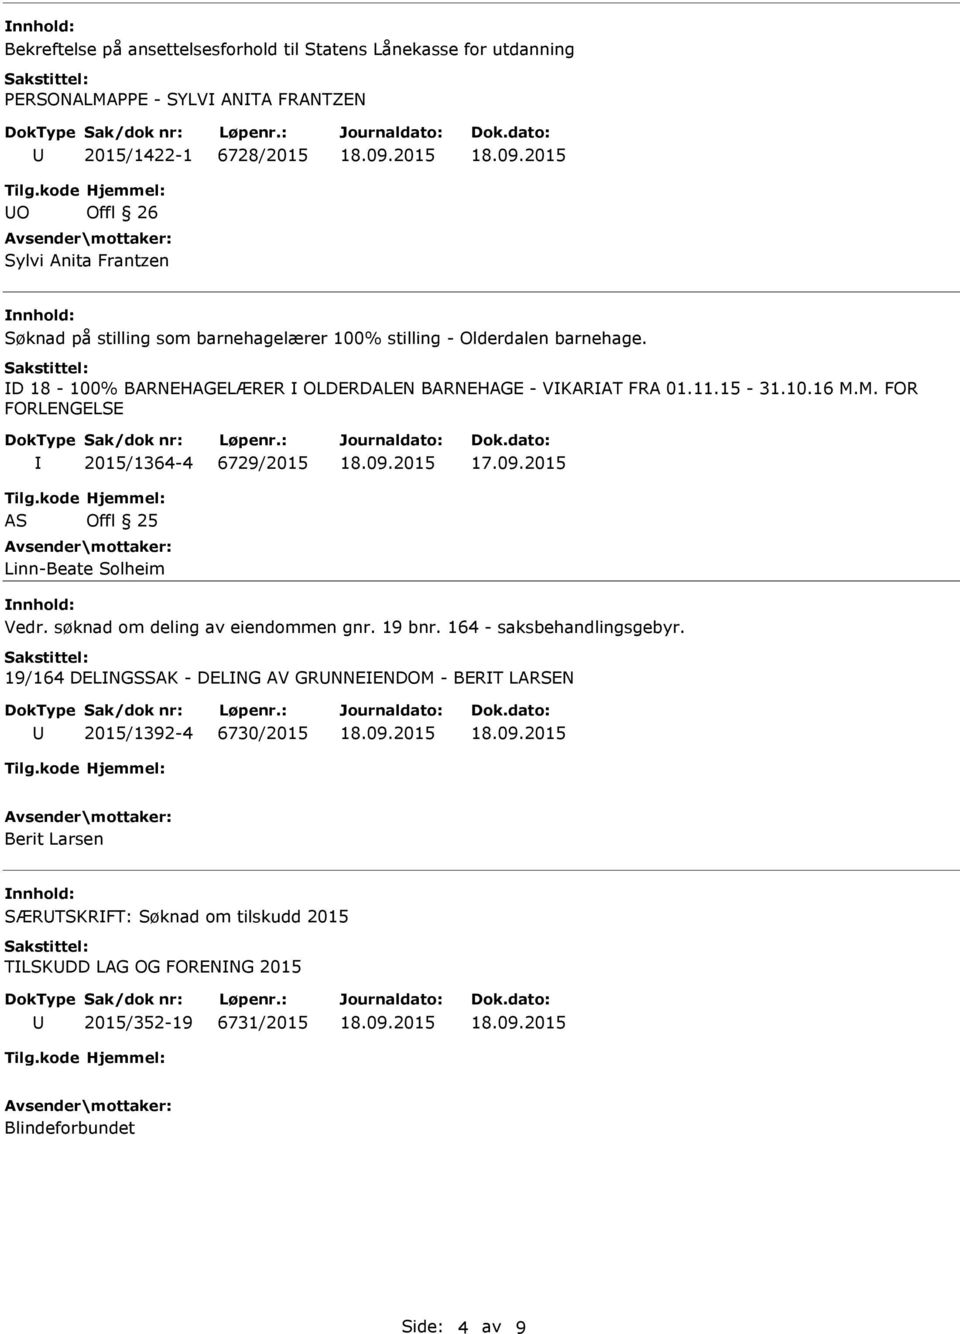 M. FOR FORLENGELSE 2015/1364-4 6729/2015 AS Offl 25 Linn-Beate Solheim Vedr. søknad om deling av eiendommen gnr. 19 bnr. 164 - saksbehandlingsgebyr.